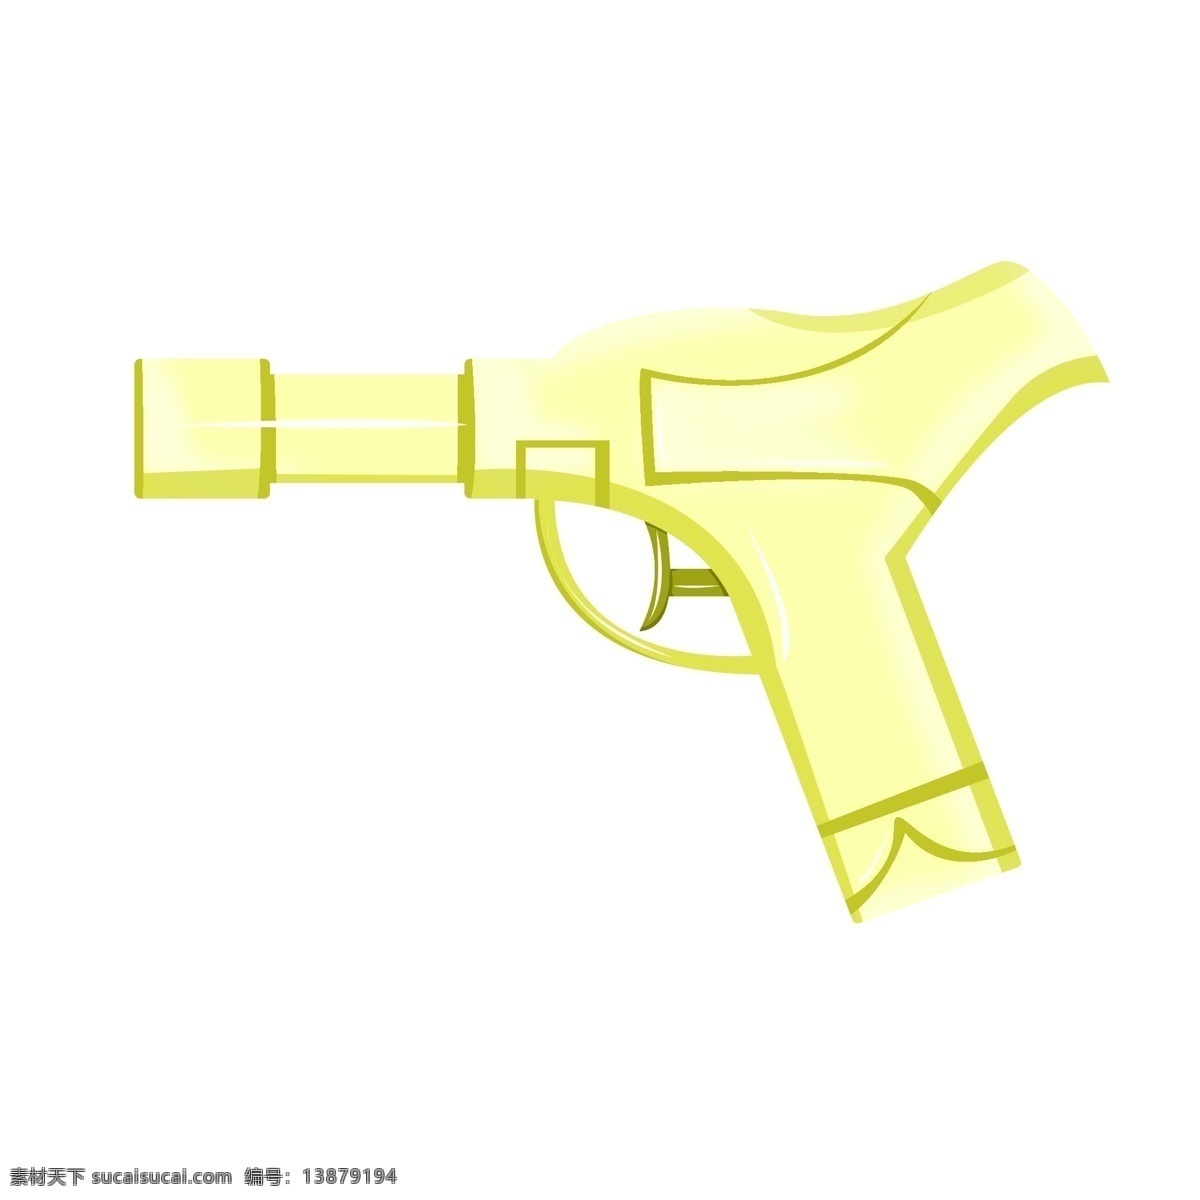 玩具水枪 黄色 玩乐 游戏